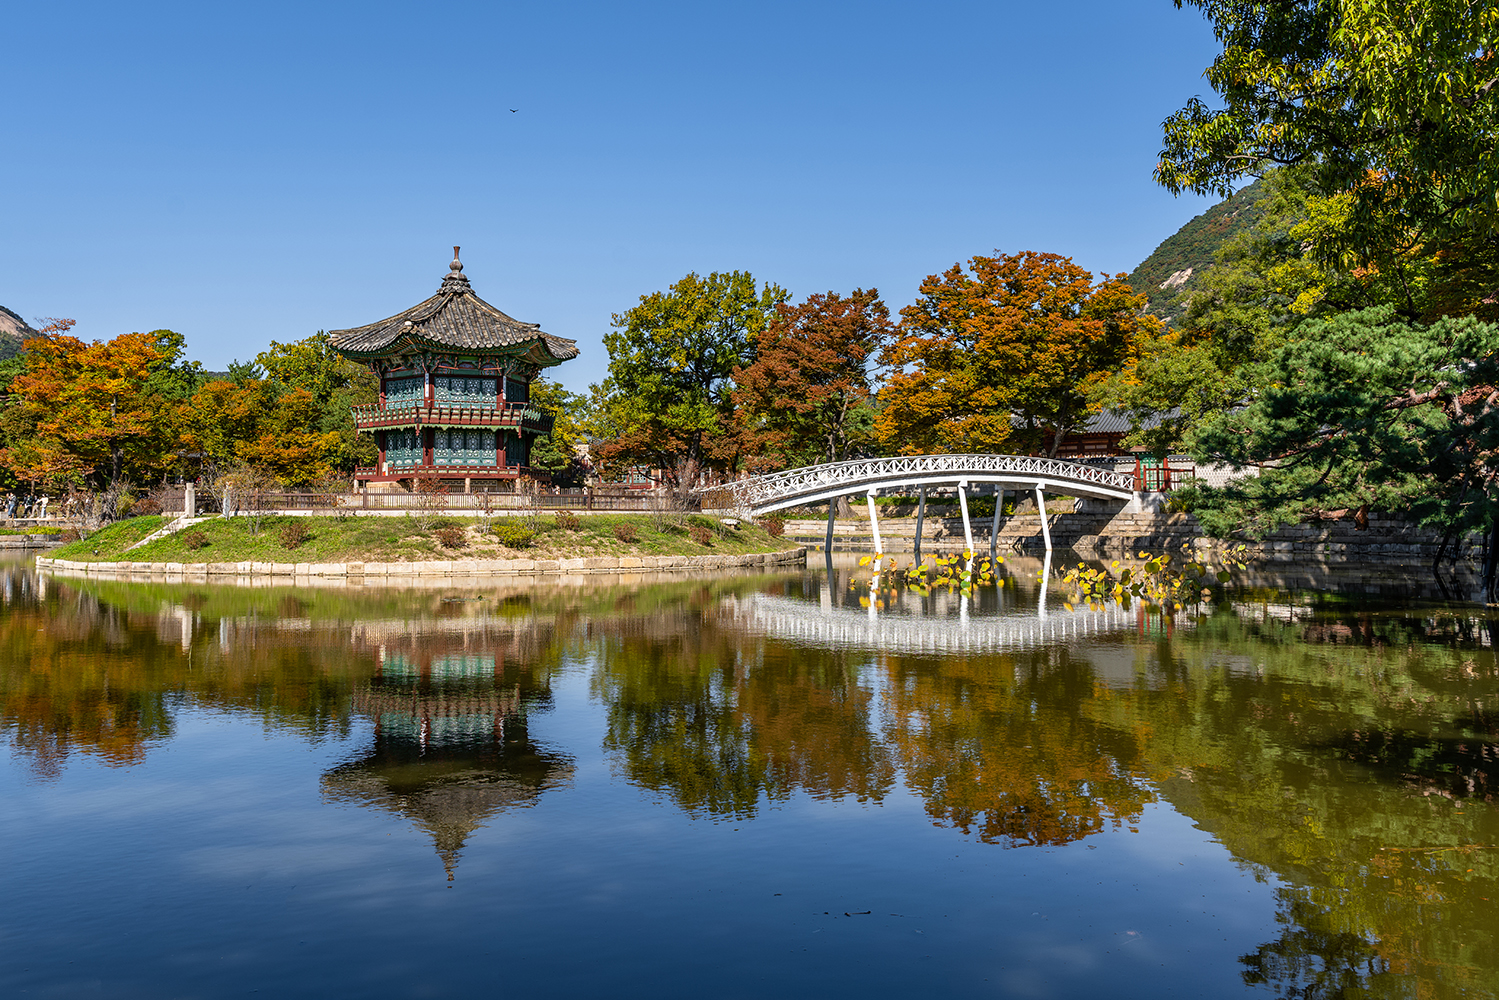 The landmark Gyeongbokgung royal palace